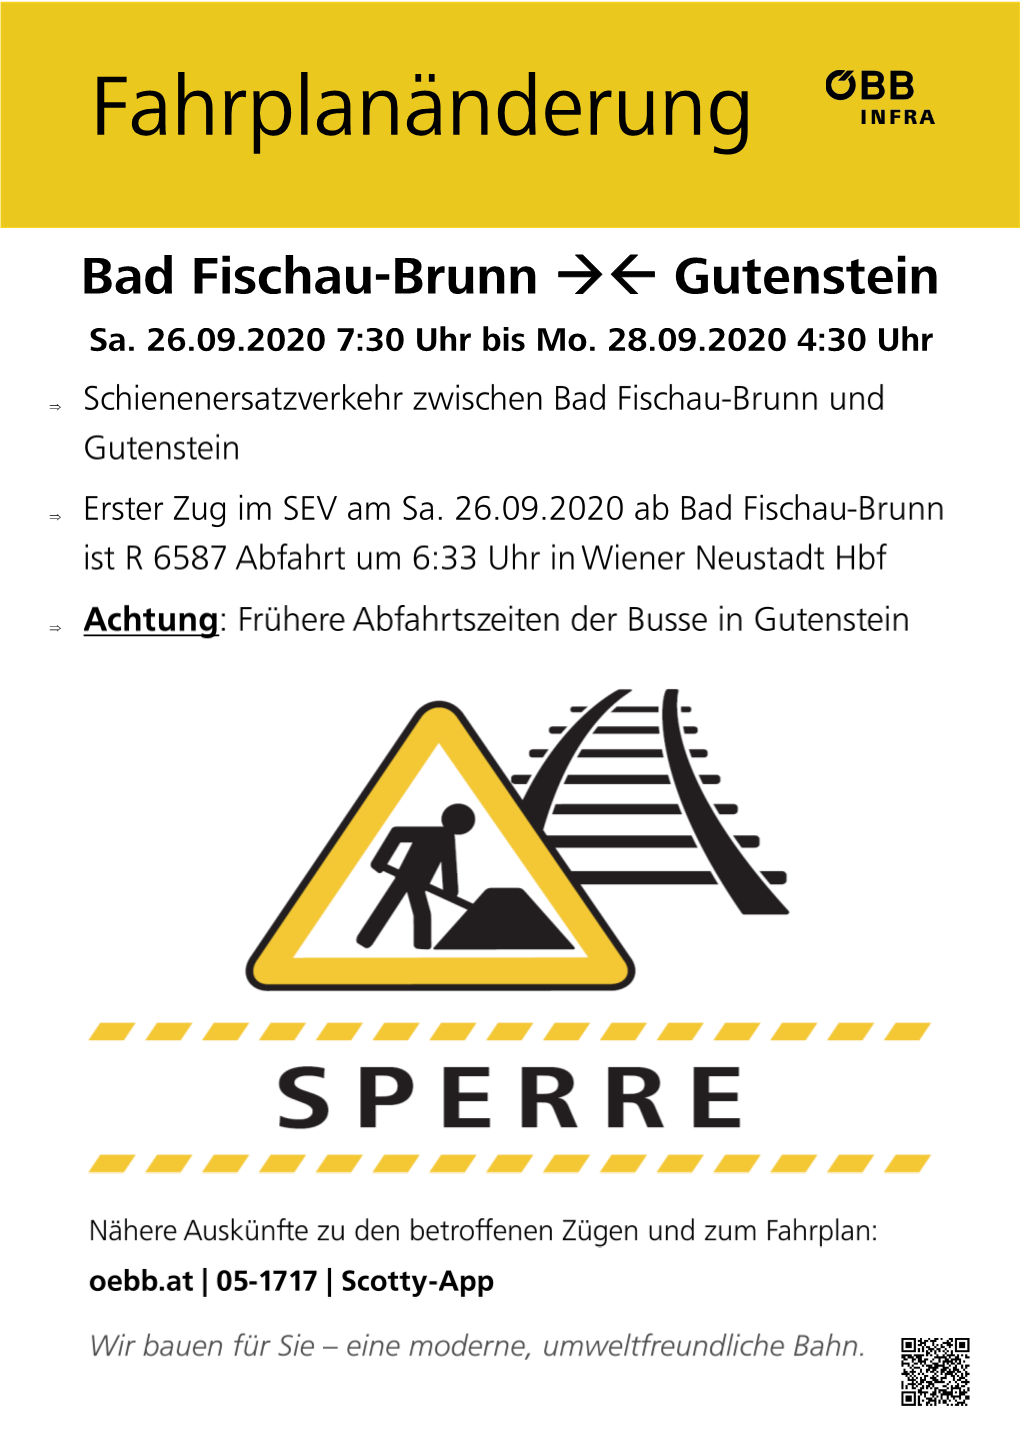 Bad Fischau-Brunn →← Gutenstein